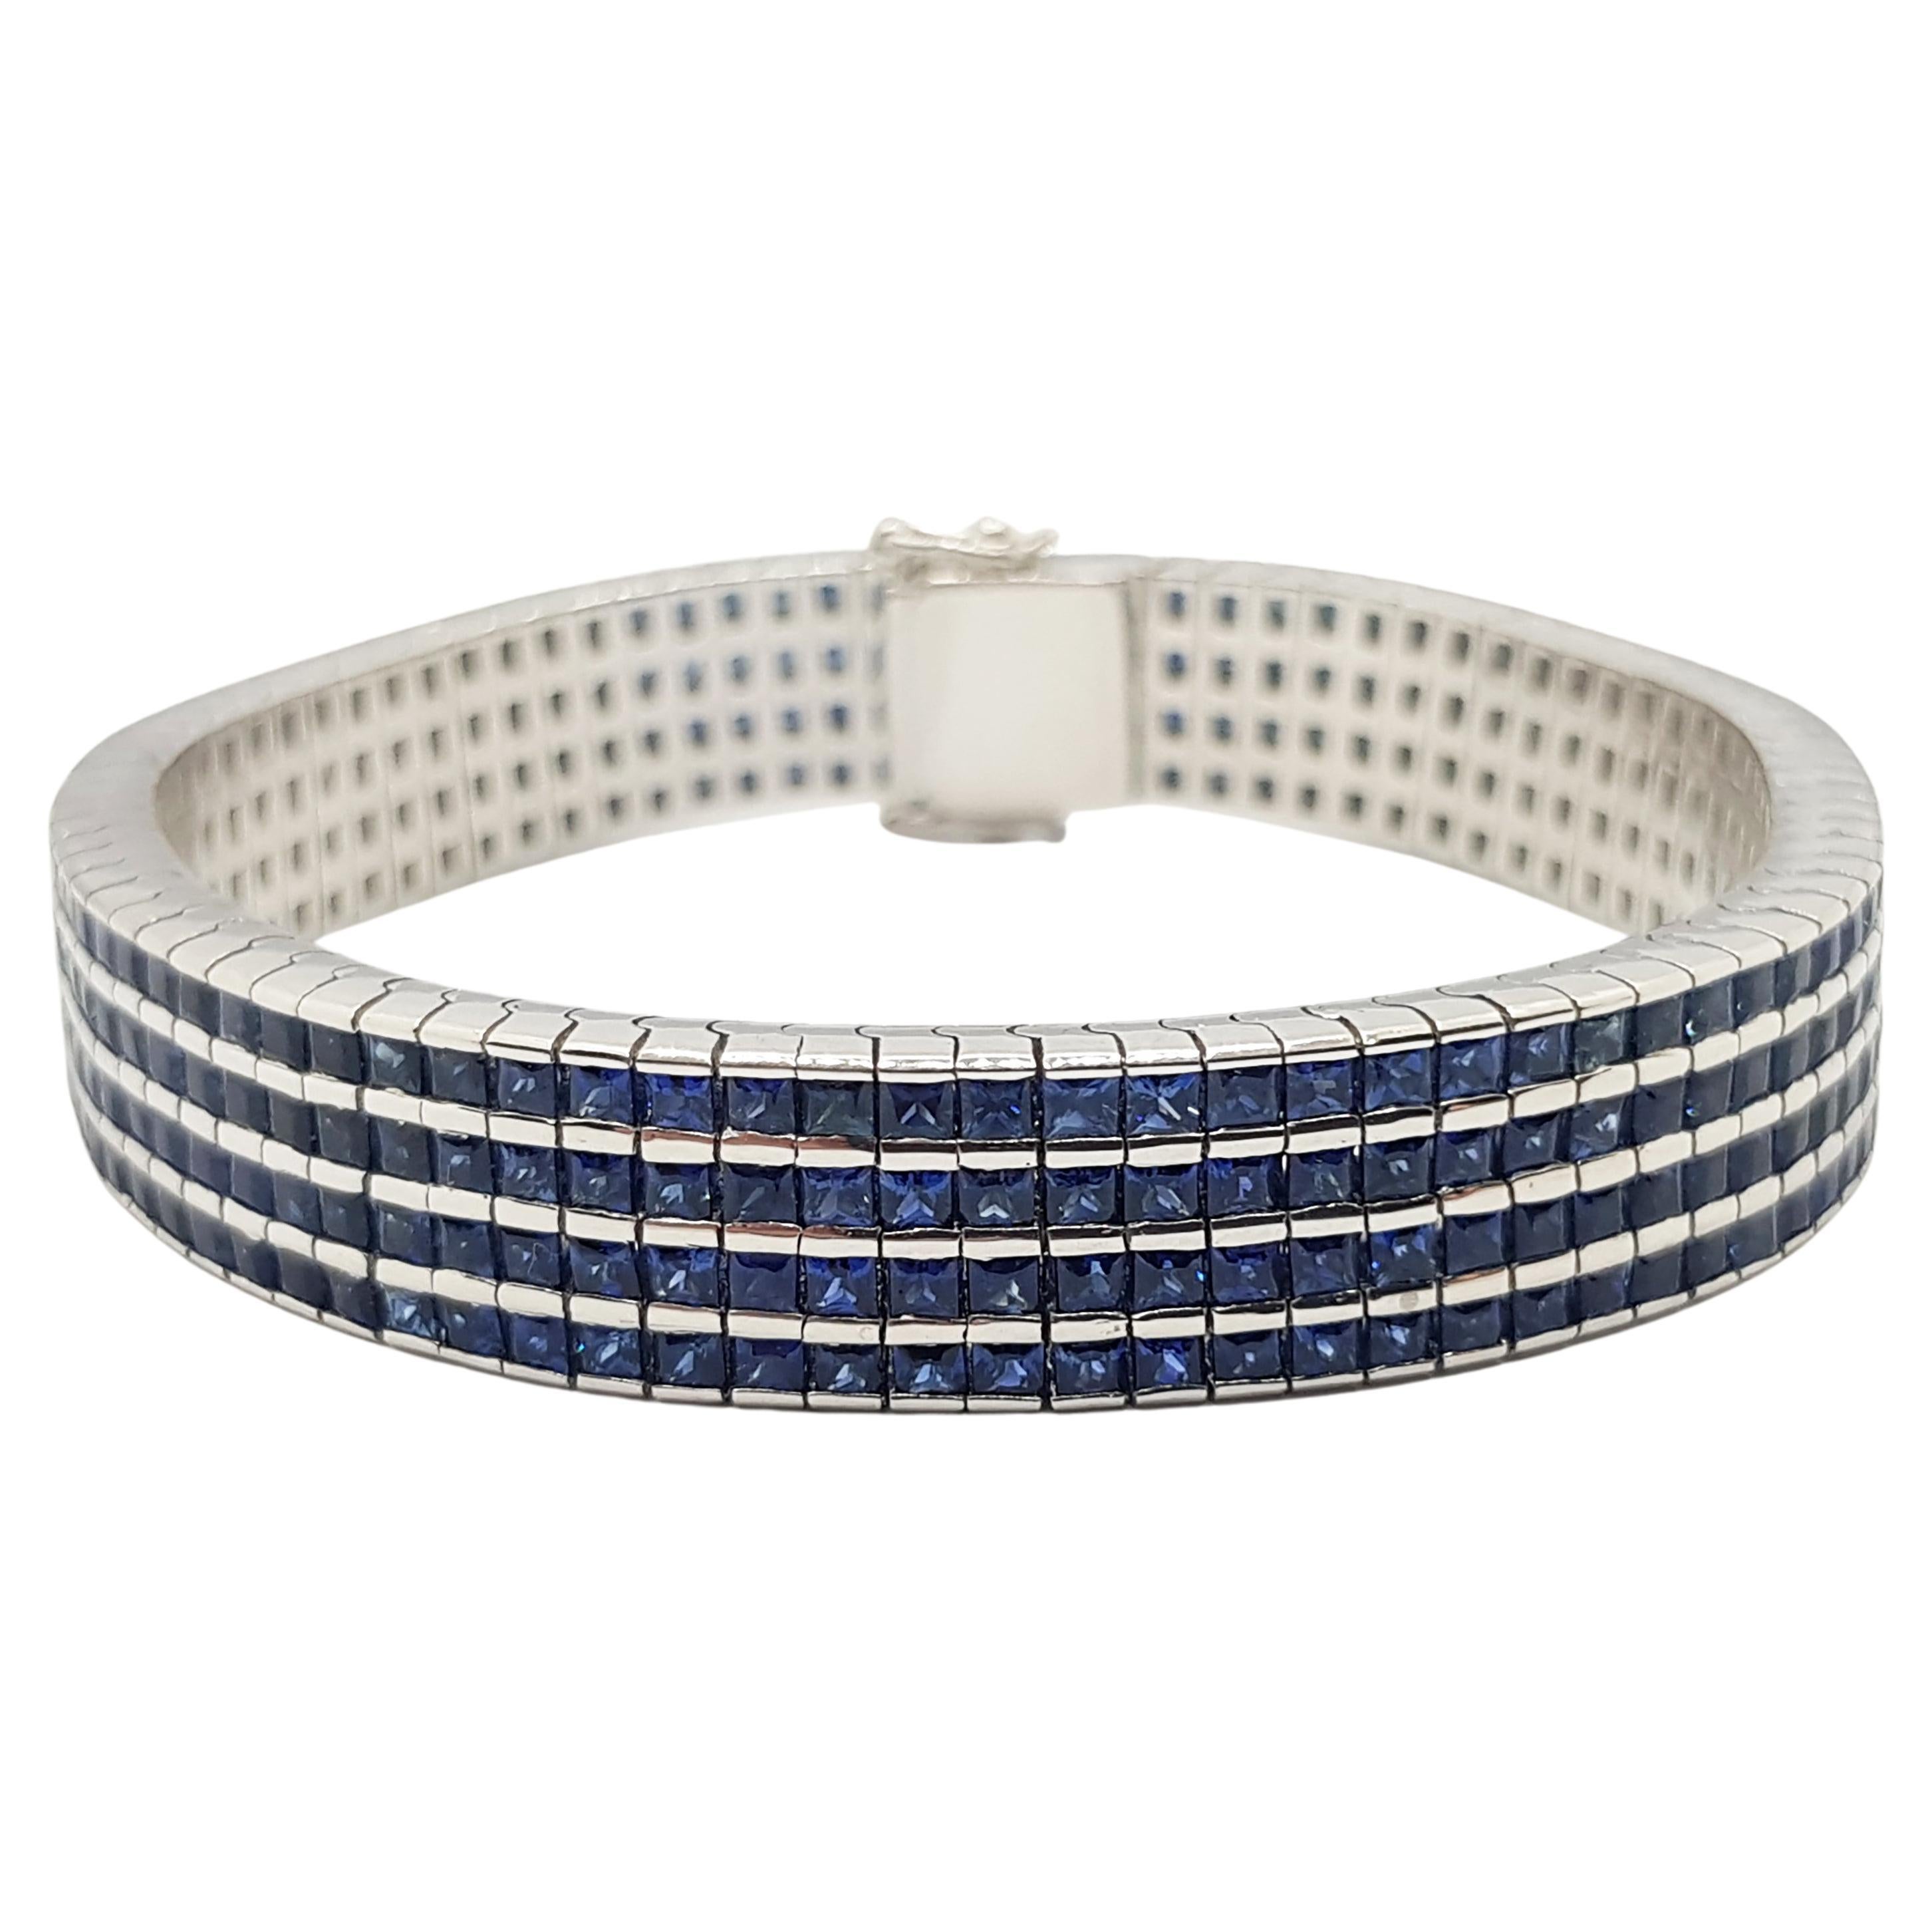 Blue Sapphire Bracelet Set in 18 Karat White Gold Settings